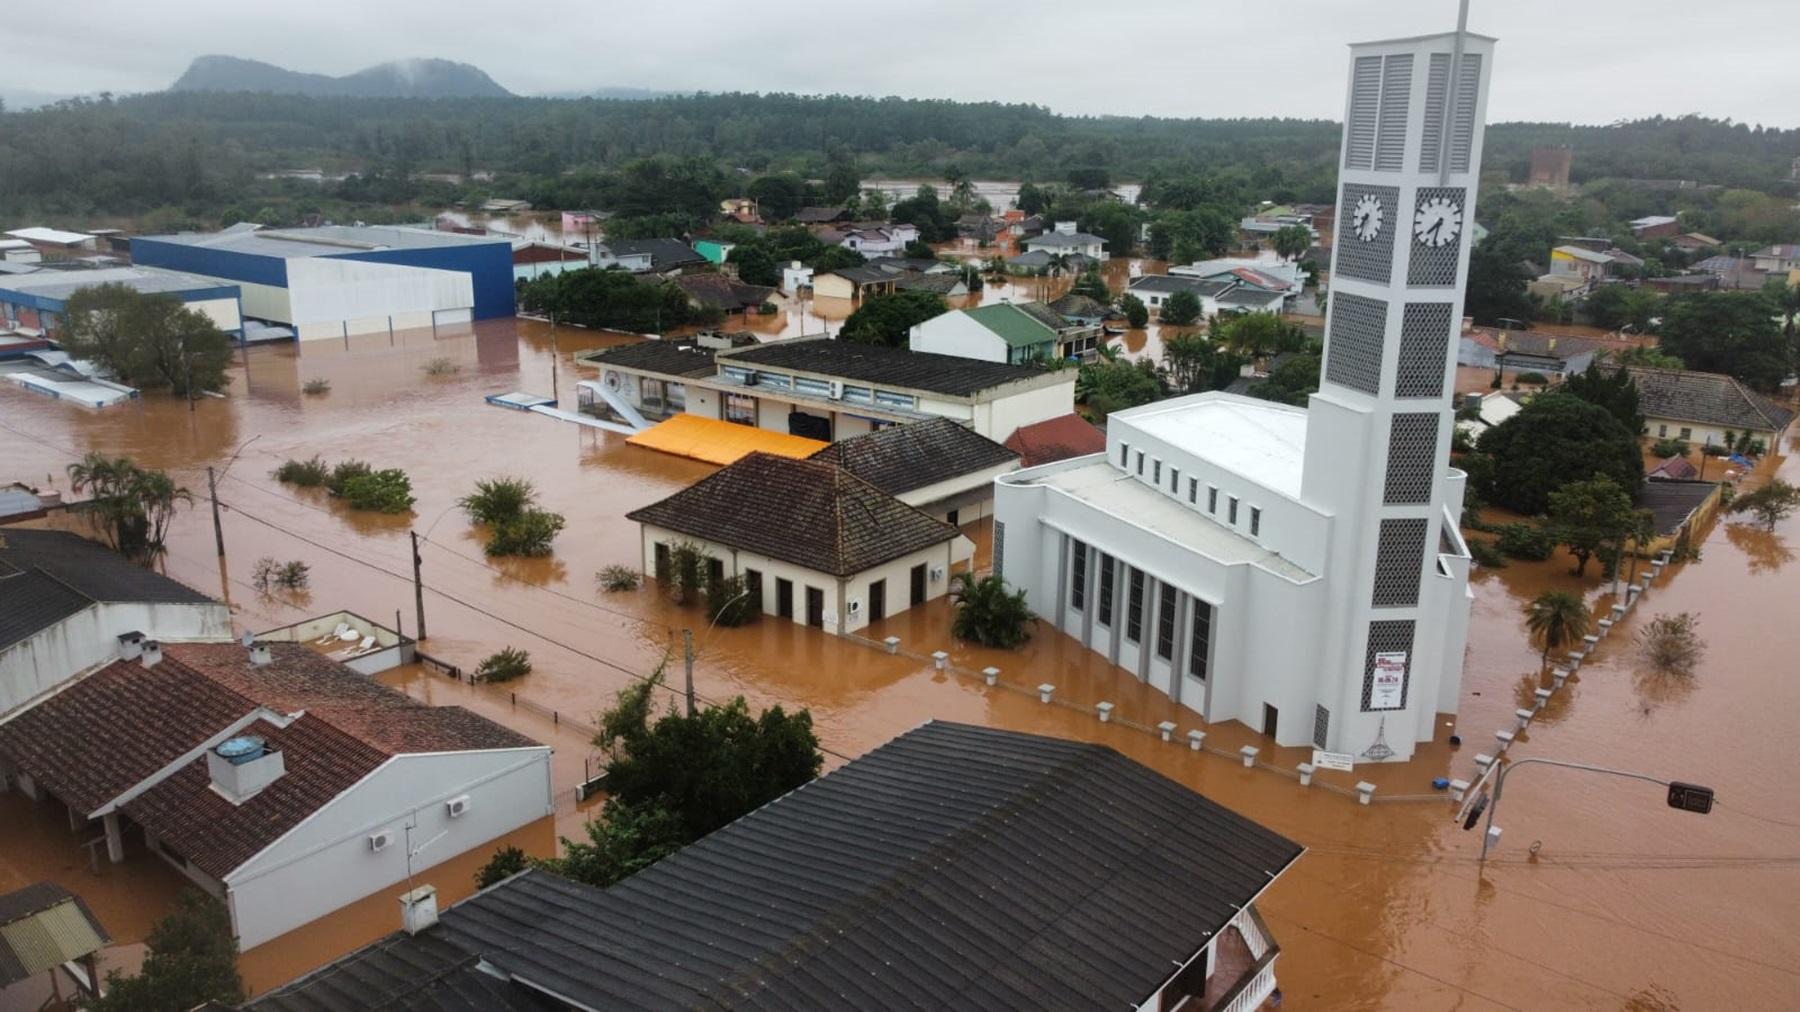 Church in Brazil, partially under water